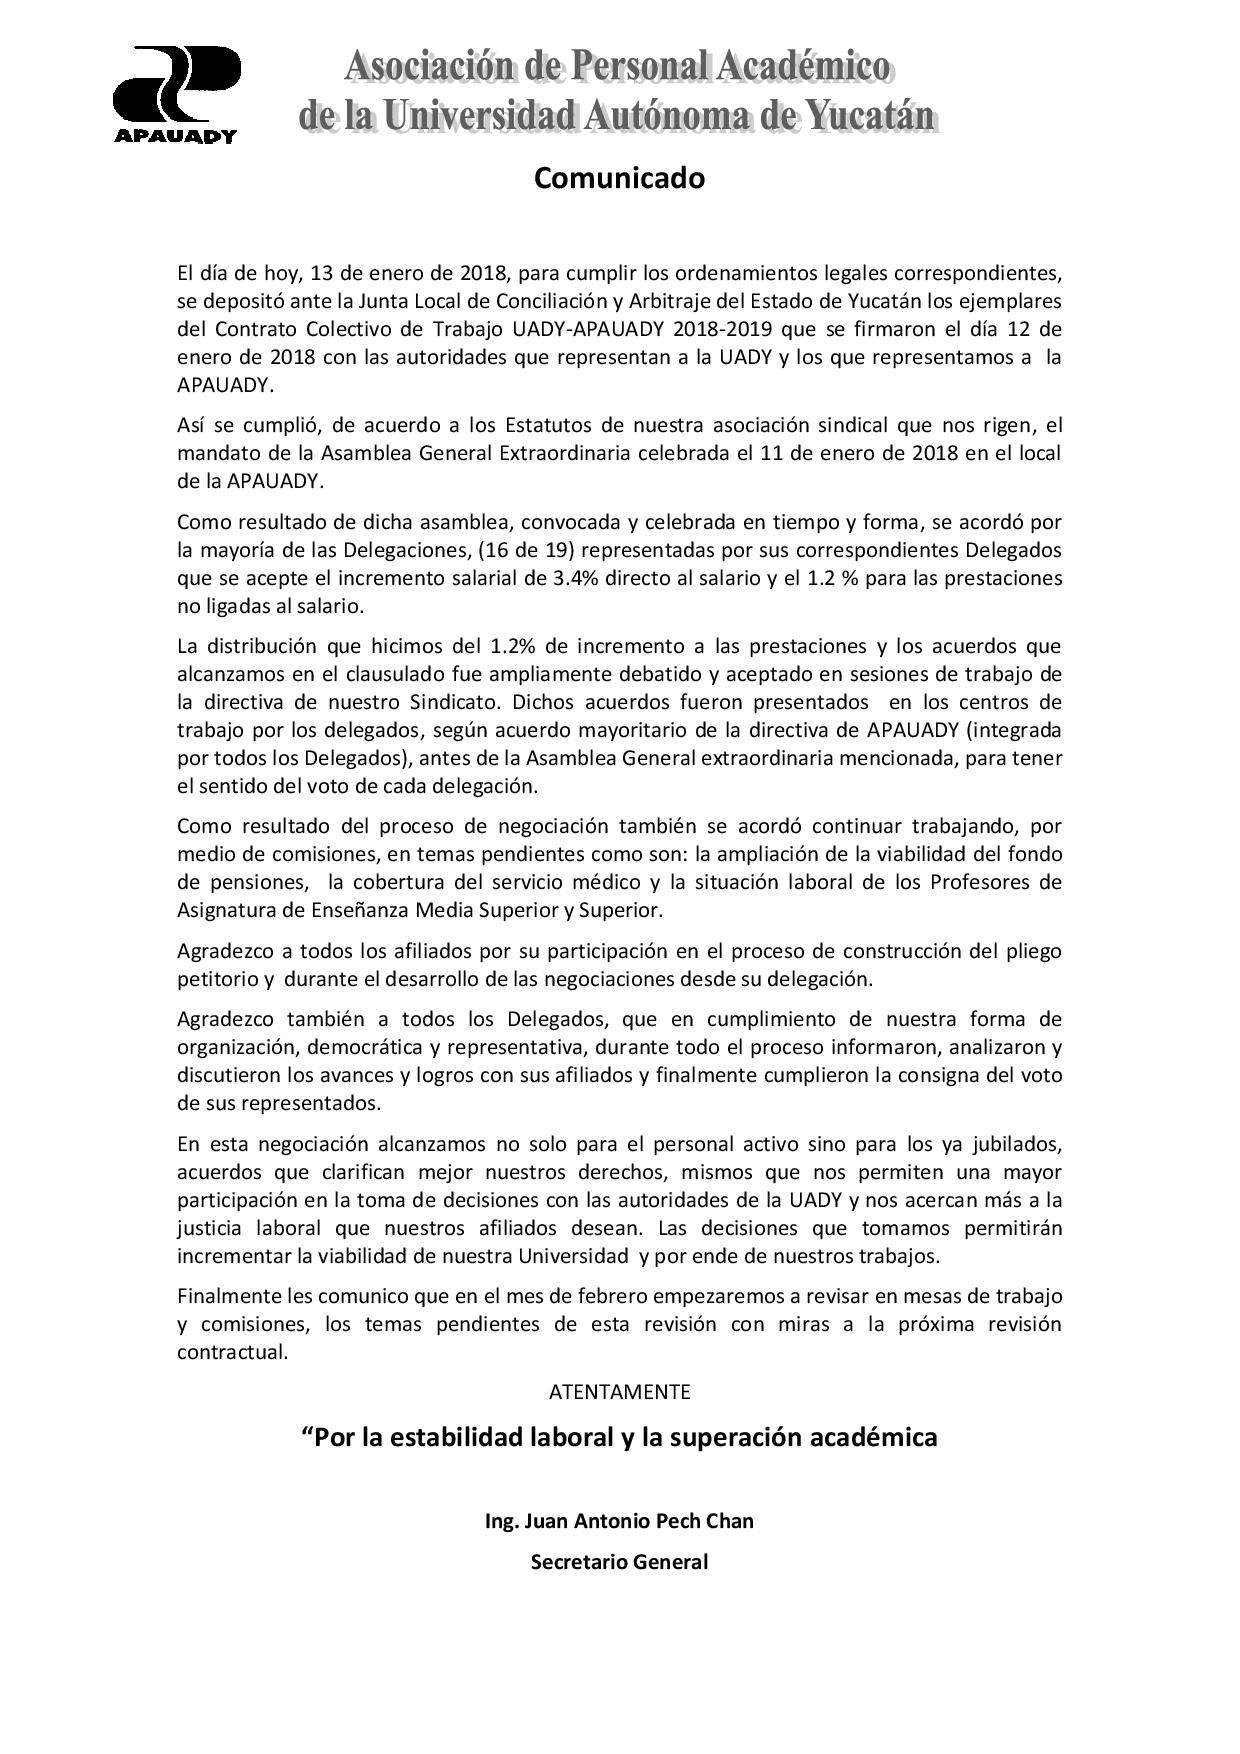 Featured image for “Comunicado sobre la firma del Contrato Colectivo de Trabajo UADY-APAUADY 2018-2019”